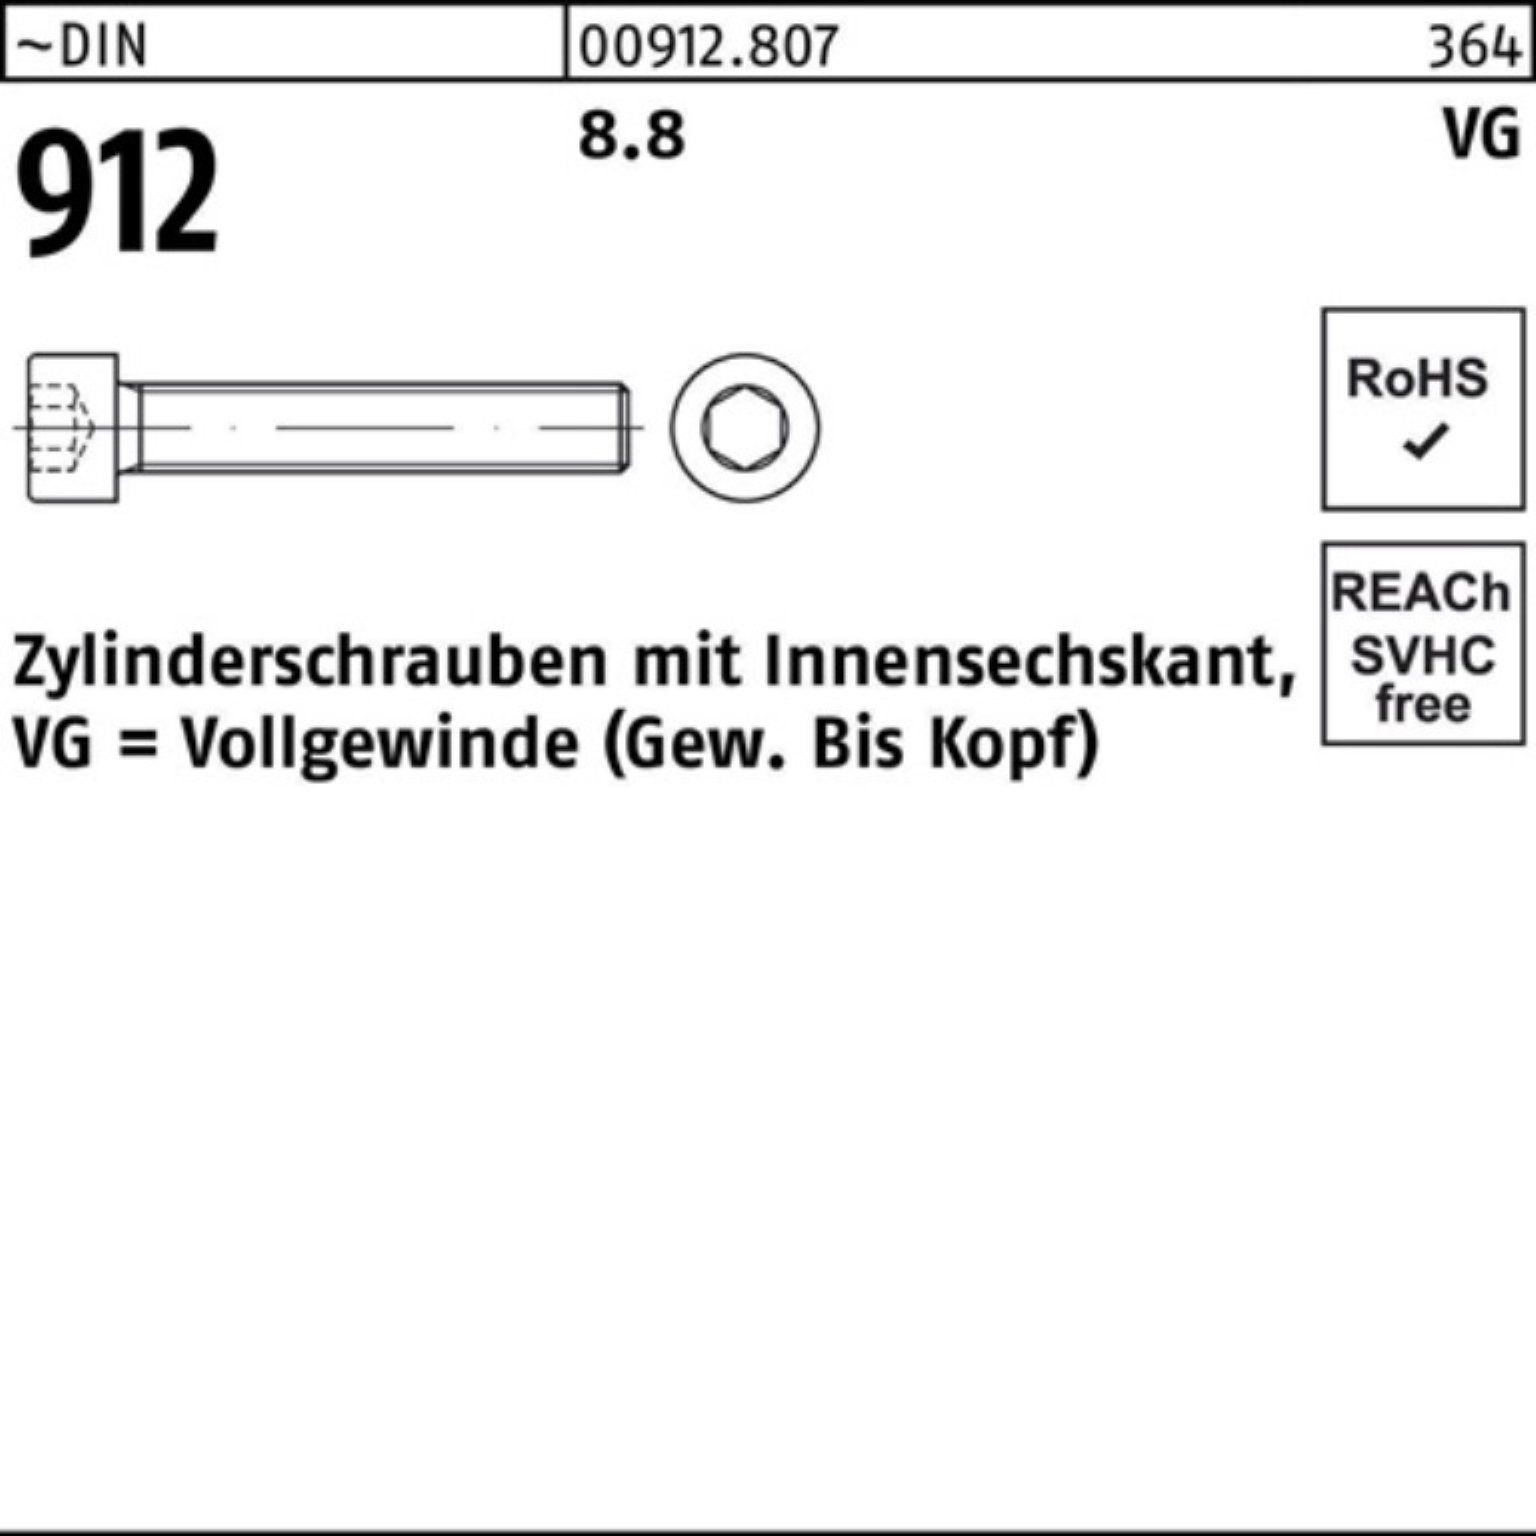 Pack 100 Innen-6kt 8.8 Reyher Zylinderschraube 100er Zylinderschraube M10x Stüc DIN 50 VG 912